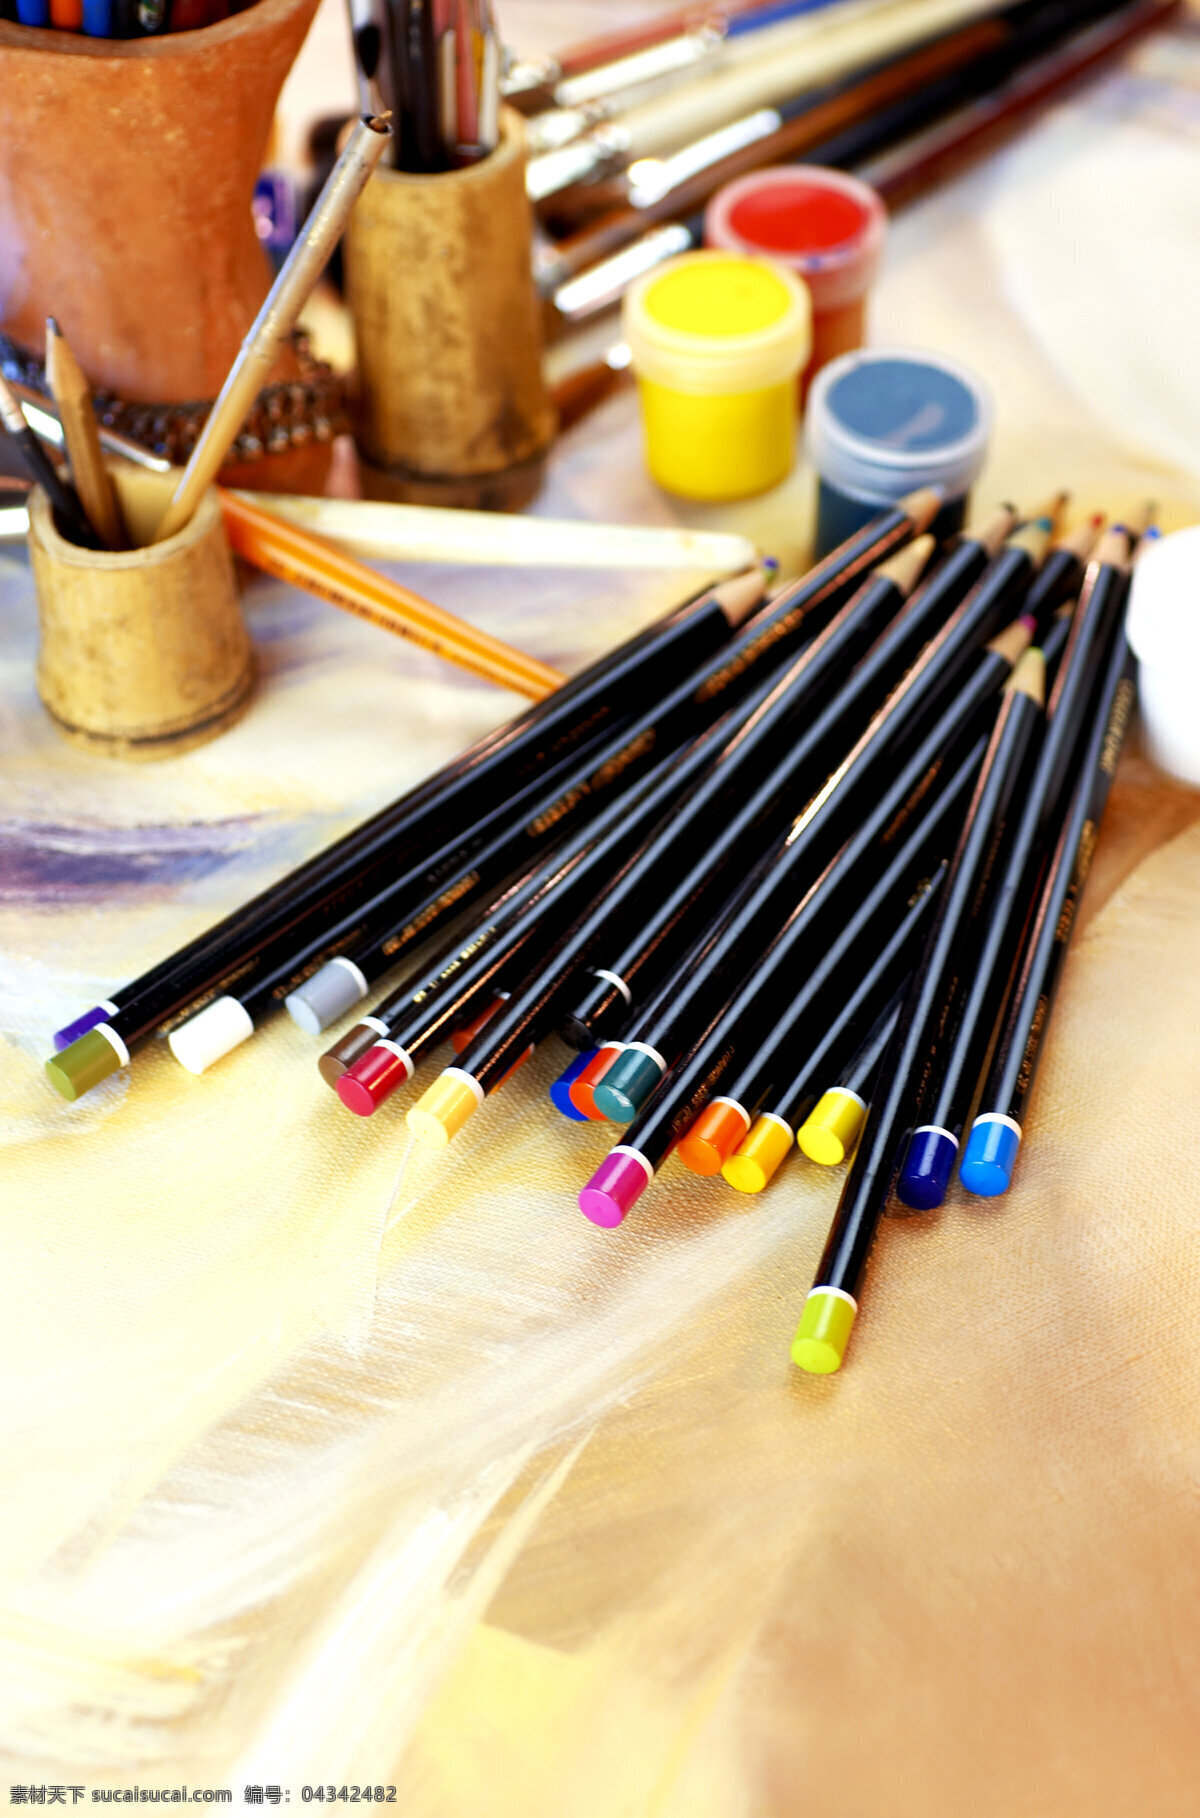 画笔 绘画工具 彩笔 水彩画笔 艺术 绘画 颜料 水彩画 美术绘画 文化艺术